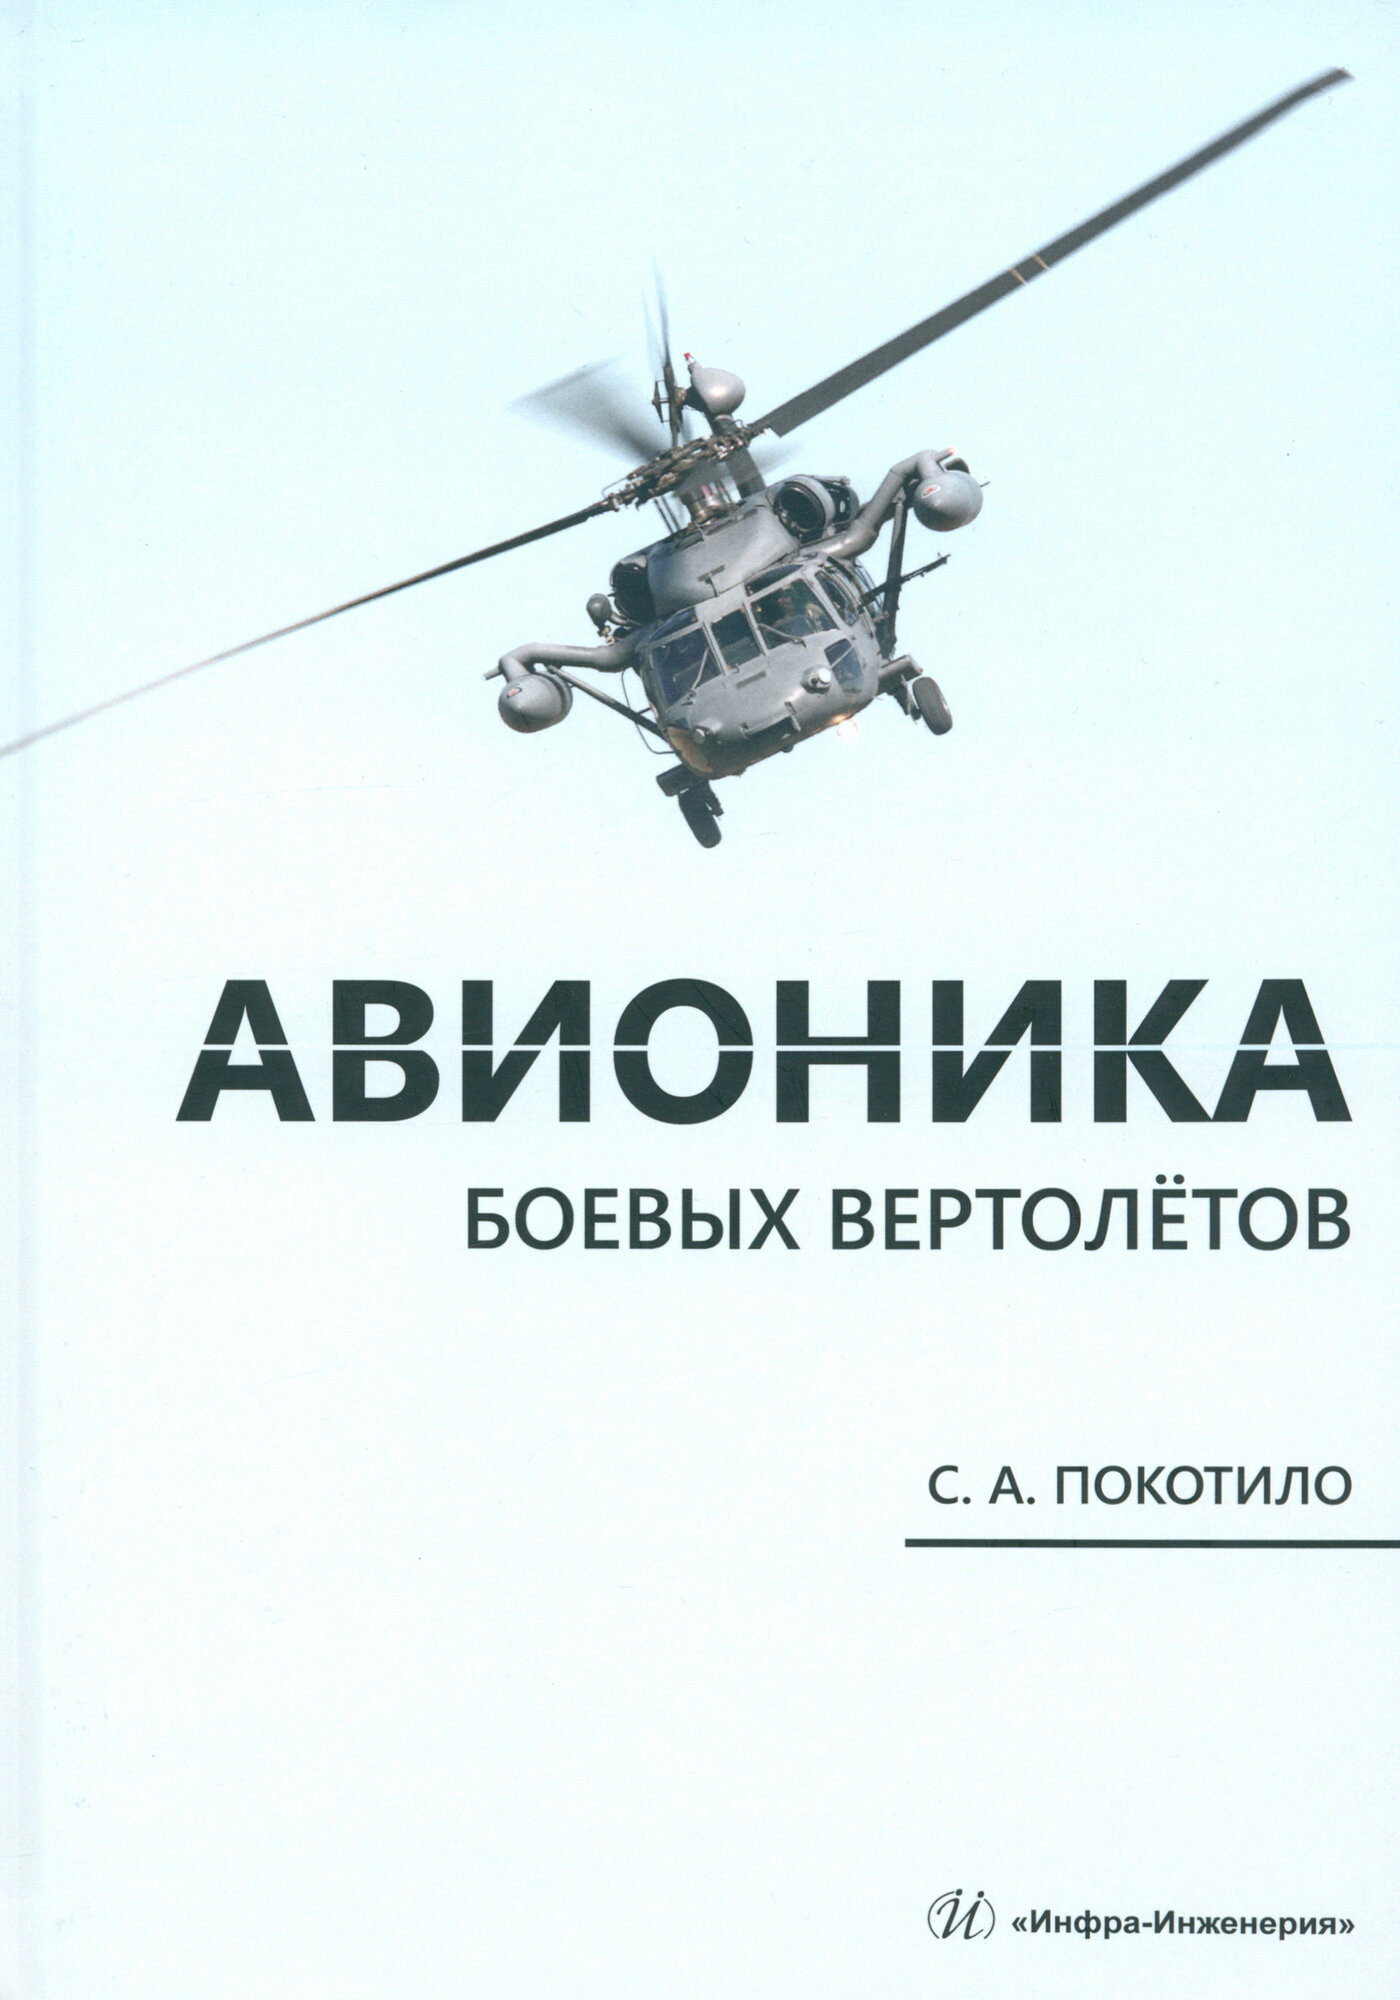 Авионика боевых вертолетов. Монография - фото №1